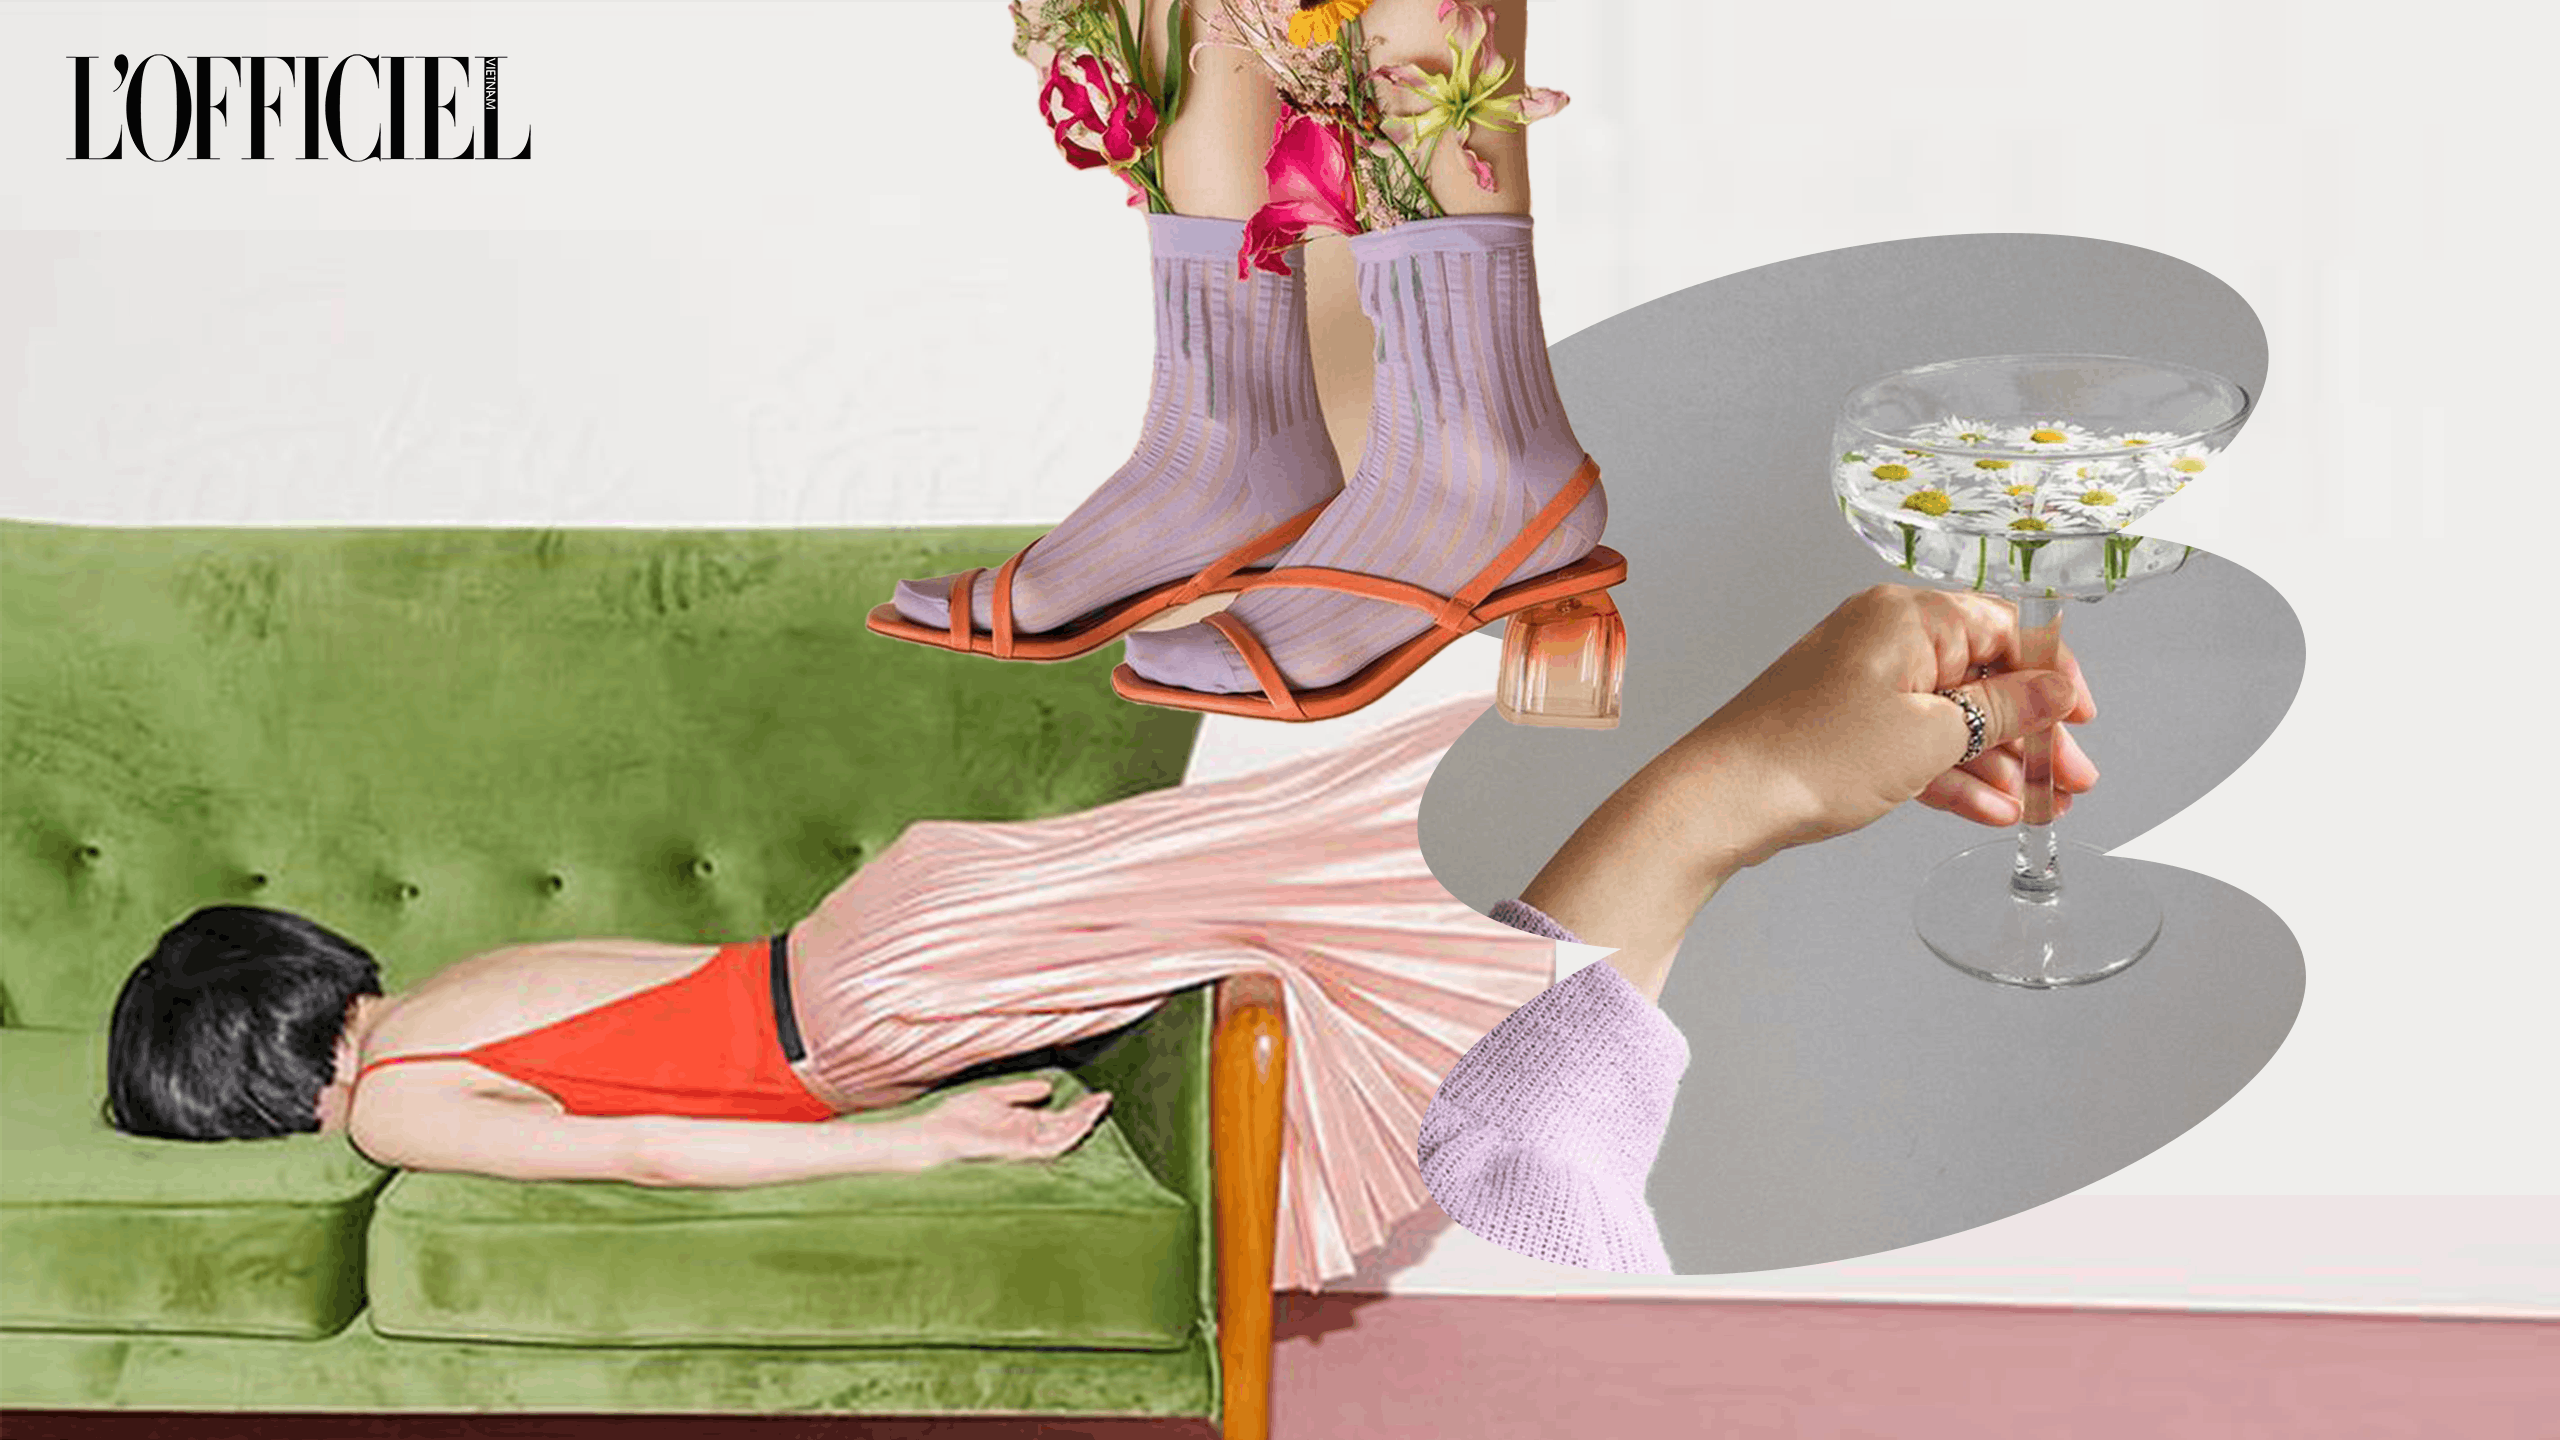 glass wine glass wine shoe footwear high heel ankle person flower plant